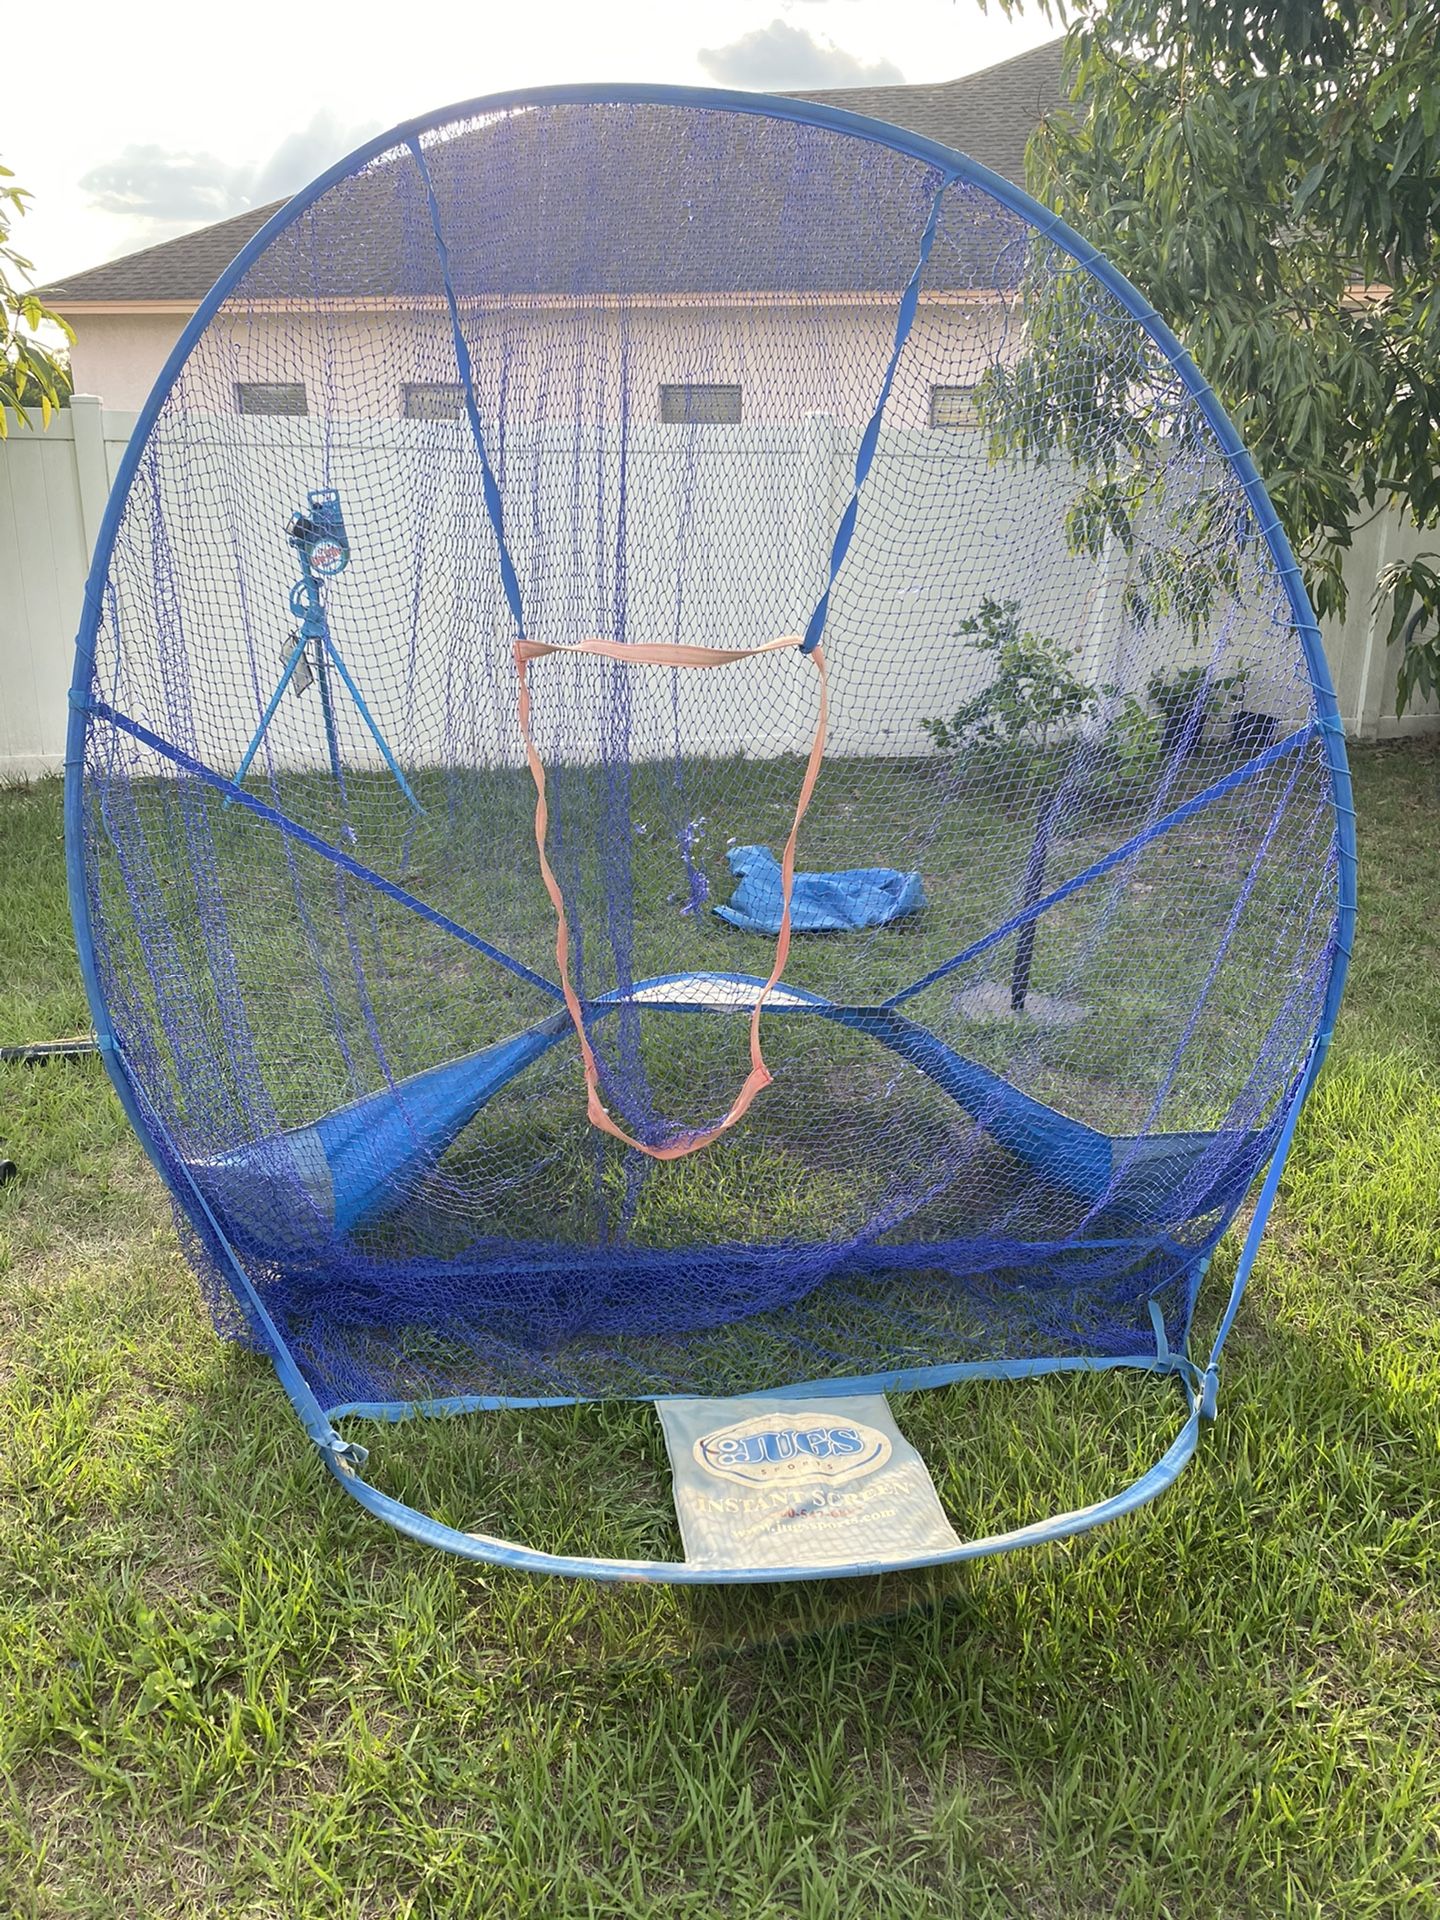 Baseball net with batting tee and bucket of balls